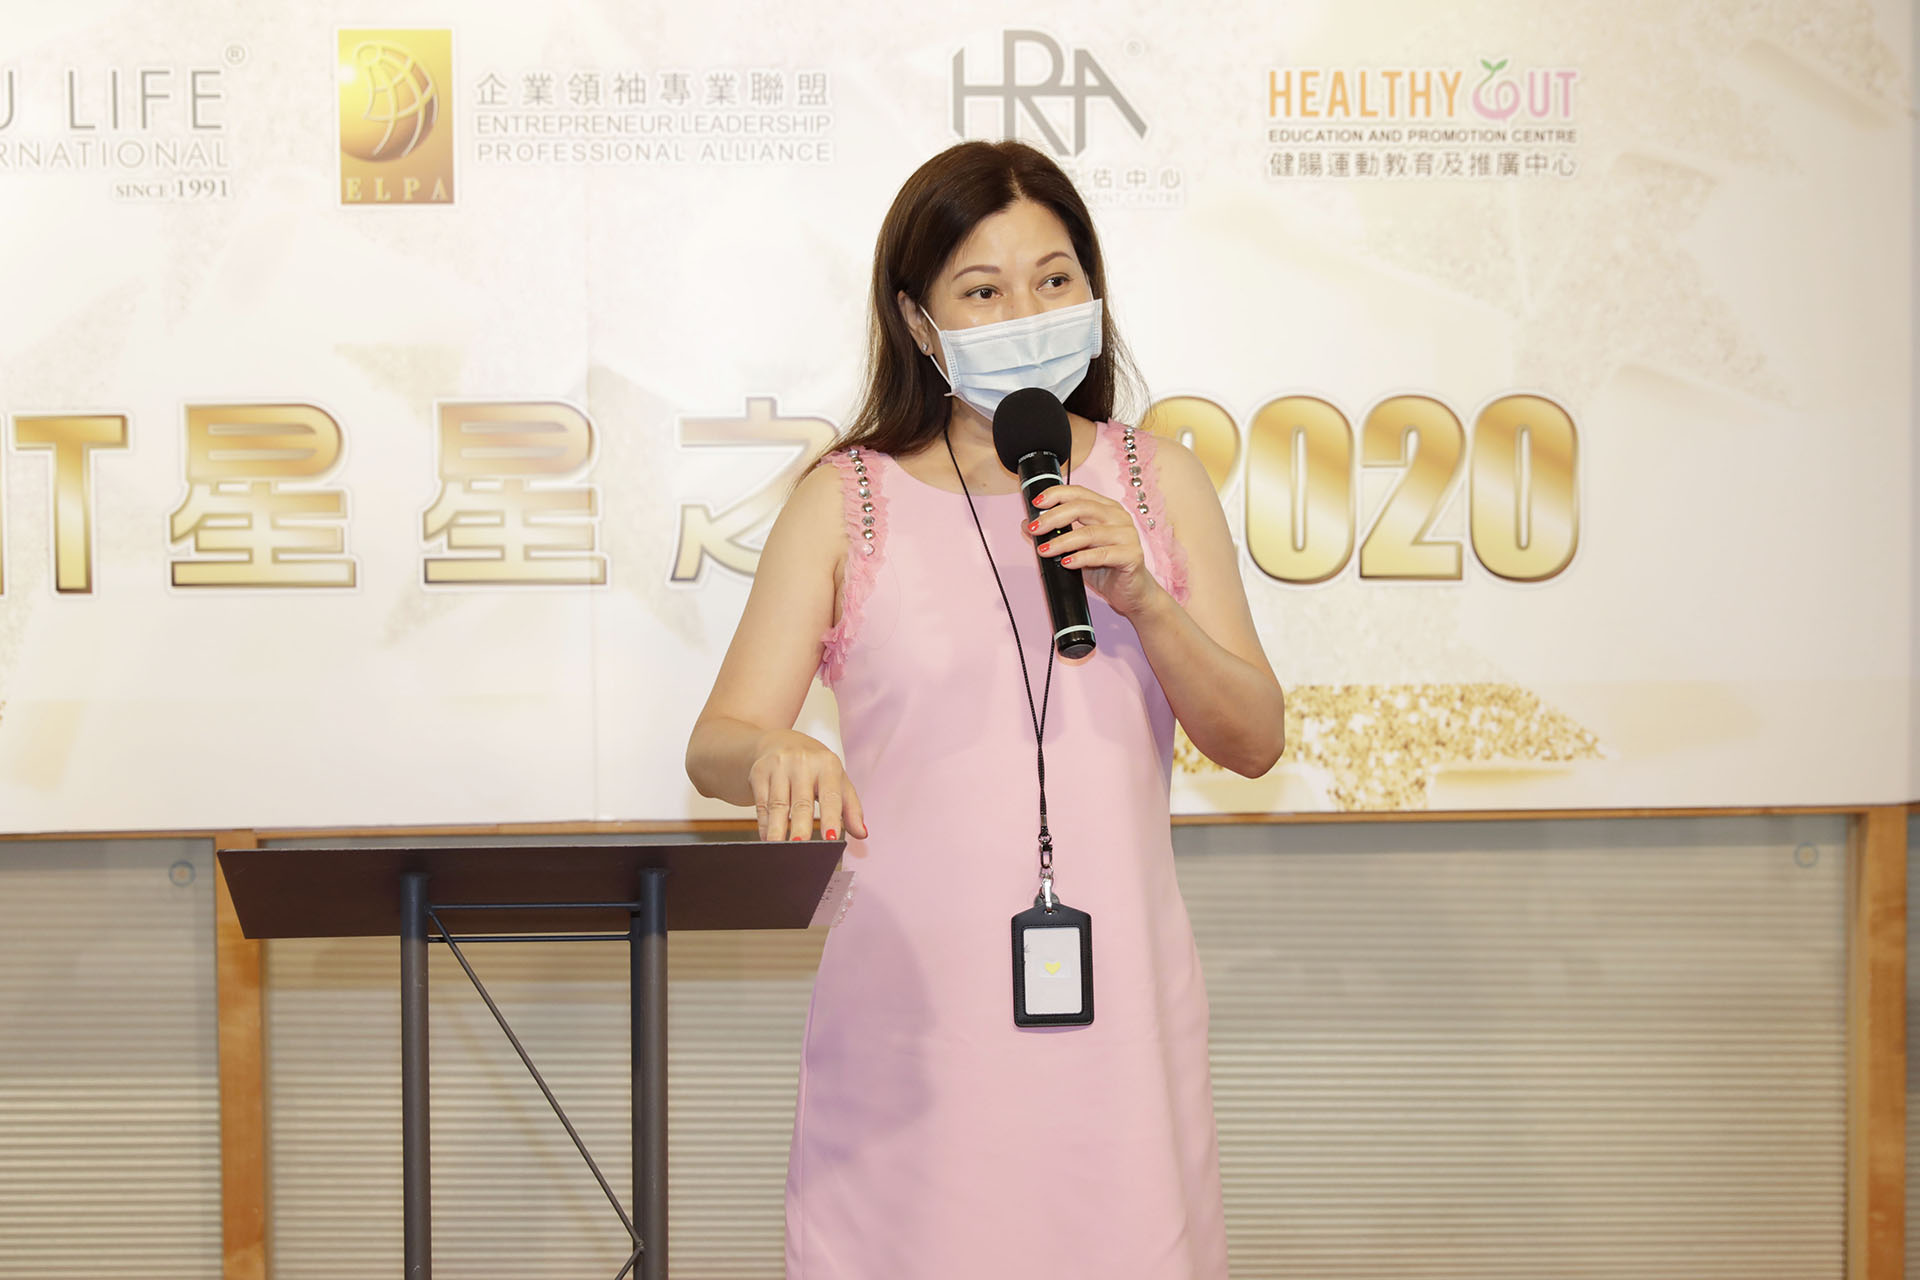 簡太為公布HRA中心第十一項服務「眼瑜珈360」